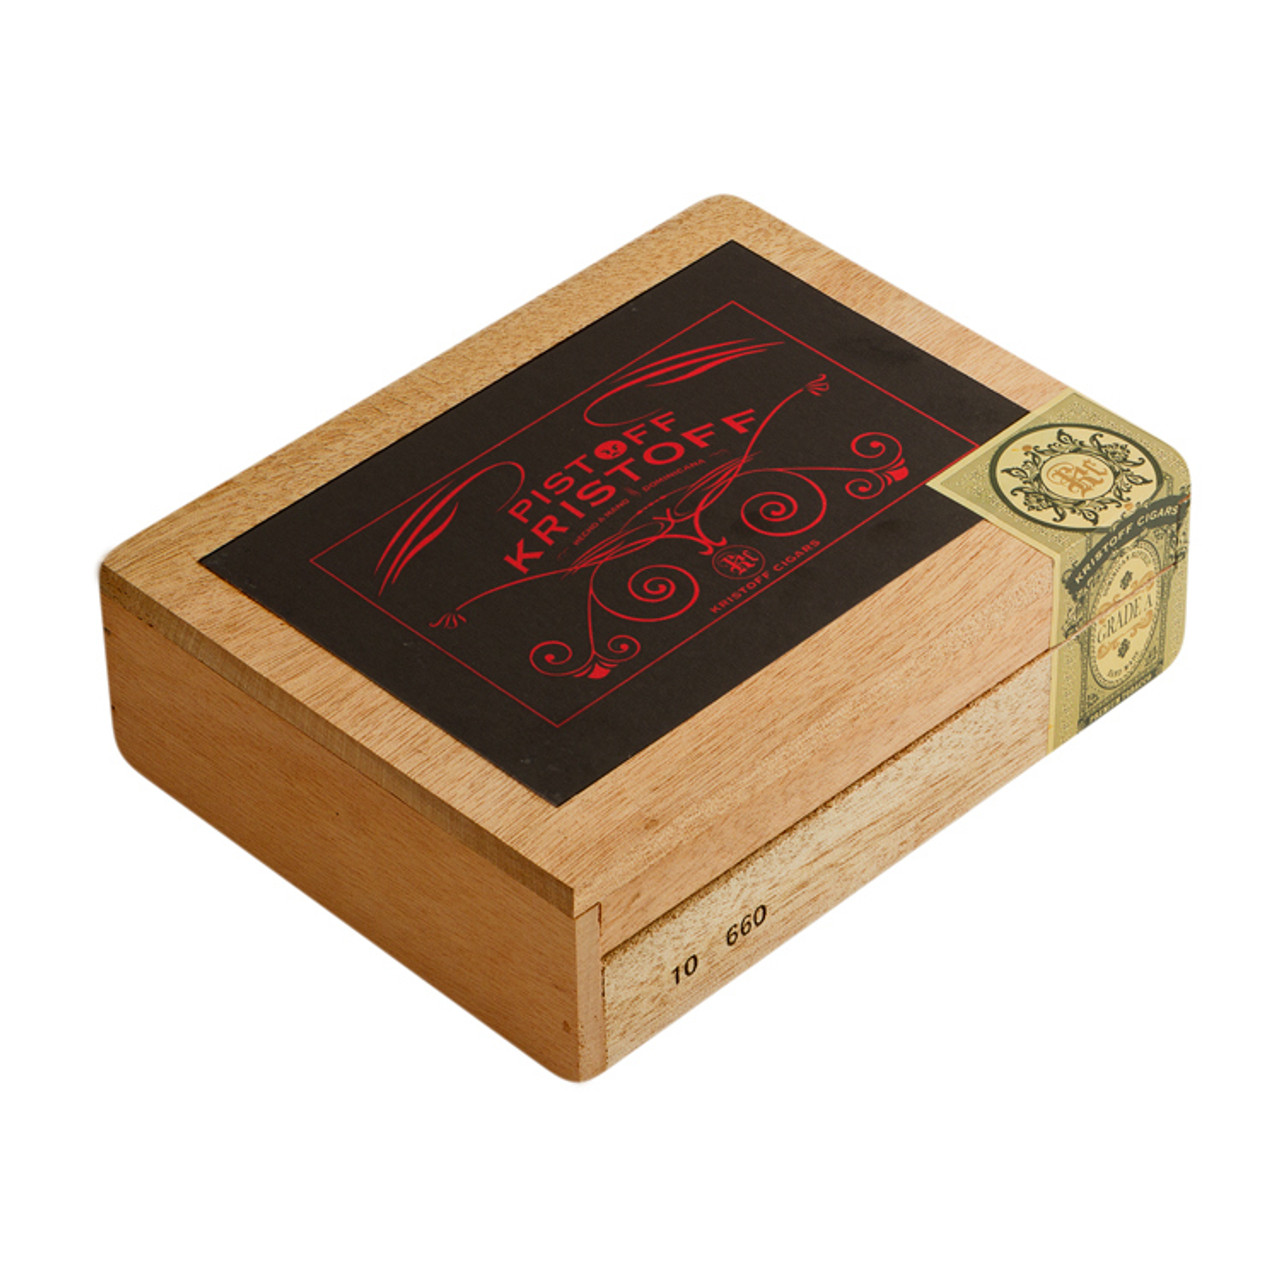 Kristoff Pistoff Robusto Cigars - 5.5 x 54 (Box of 10) *Box